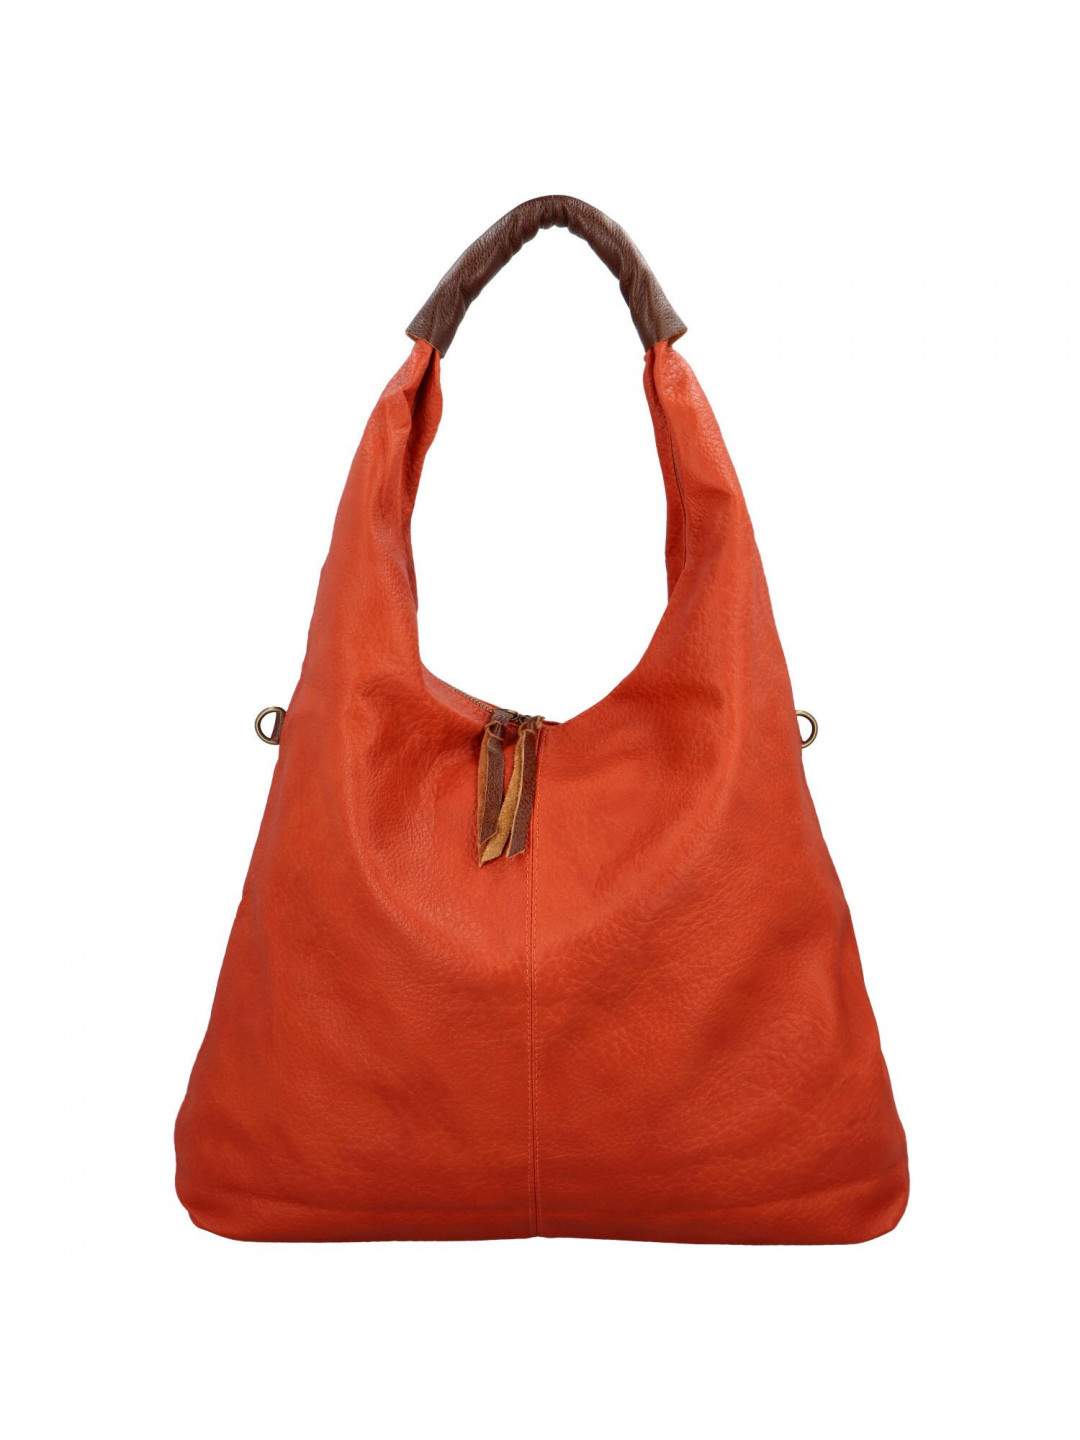 Trendová dámská kabelka přes rameno Talia oranžová